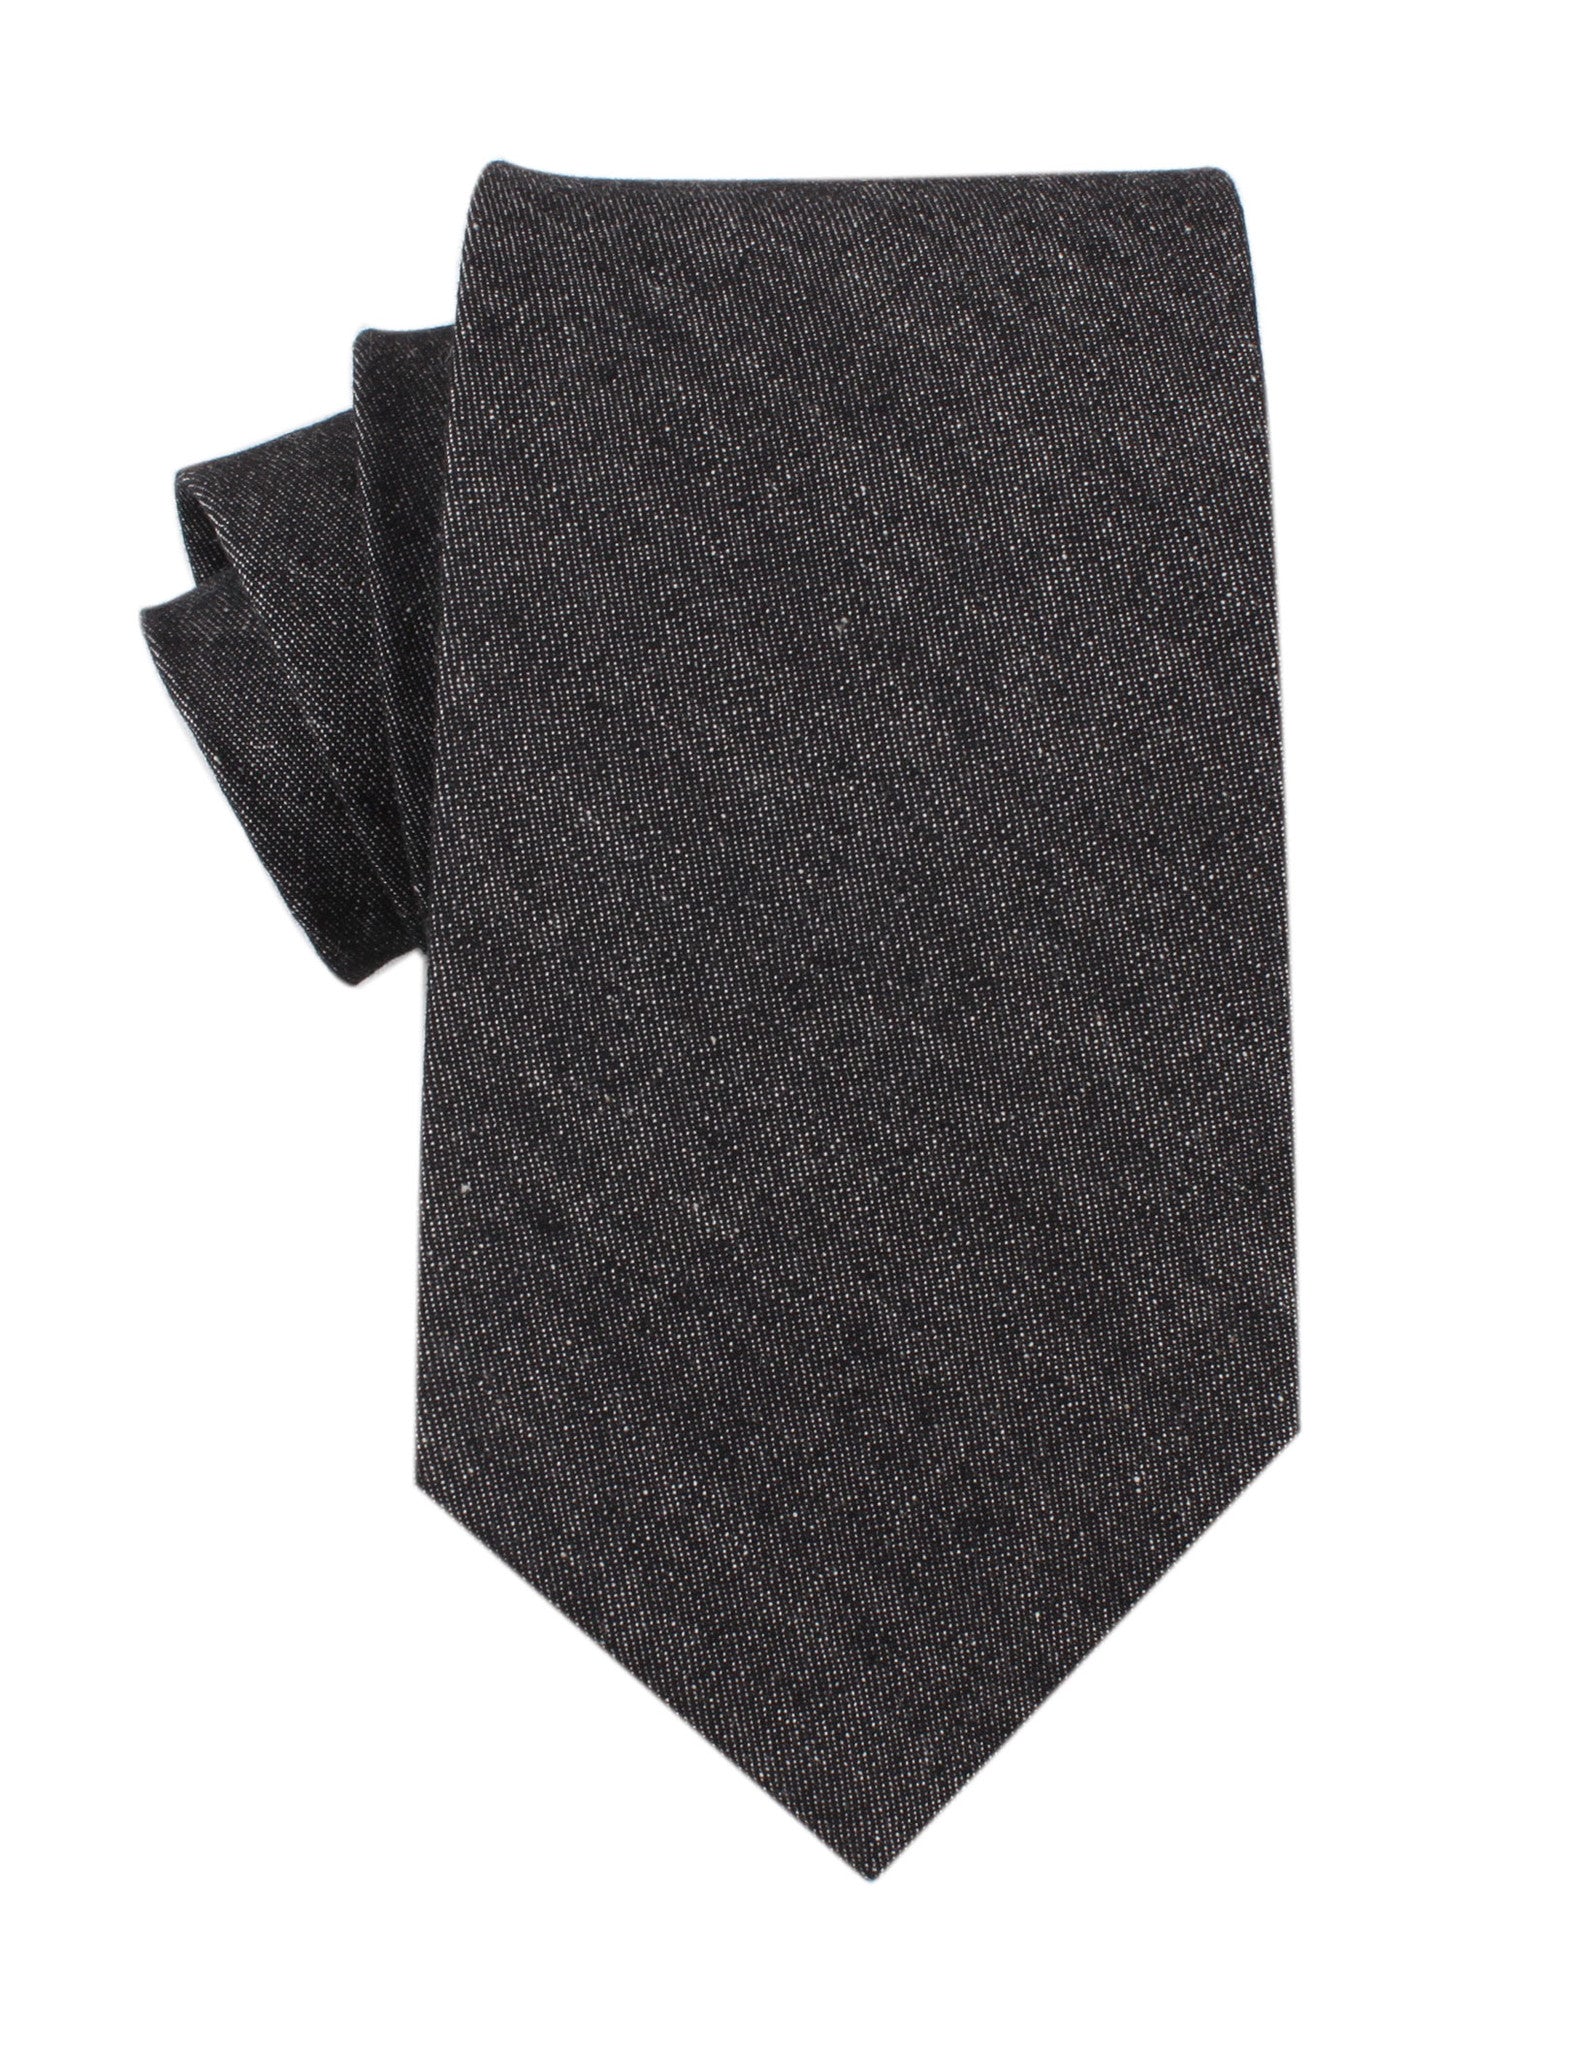 Black Denim Jeans Cotton Necktie | Men's Blazer Tie | Business Ties AU ...